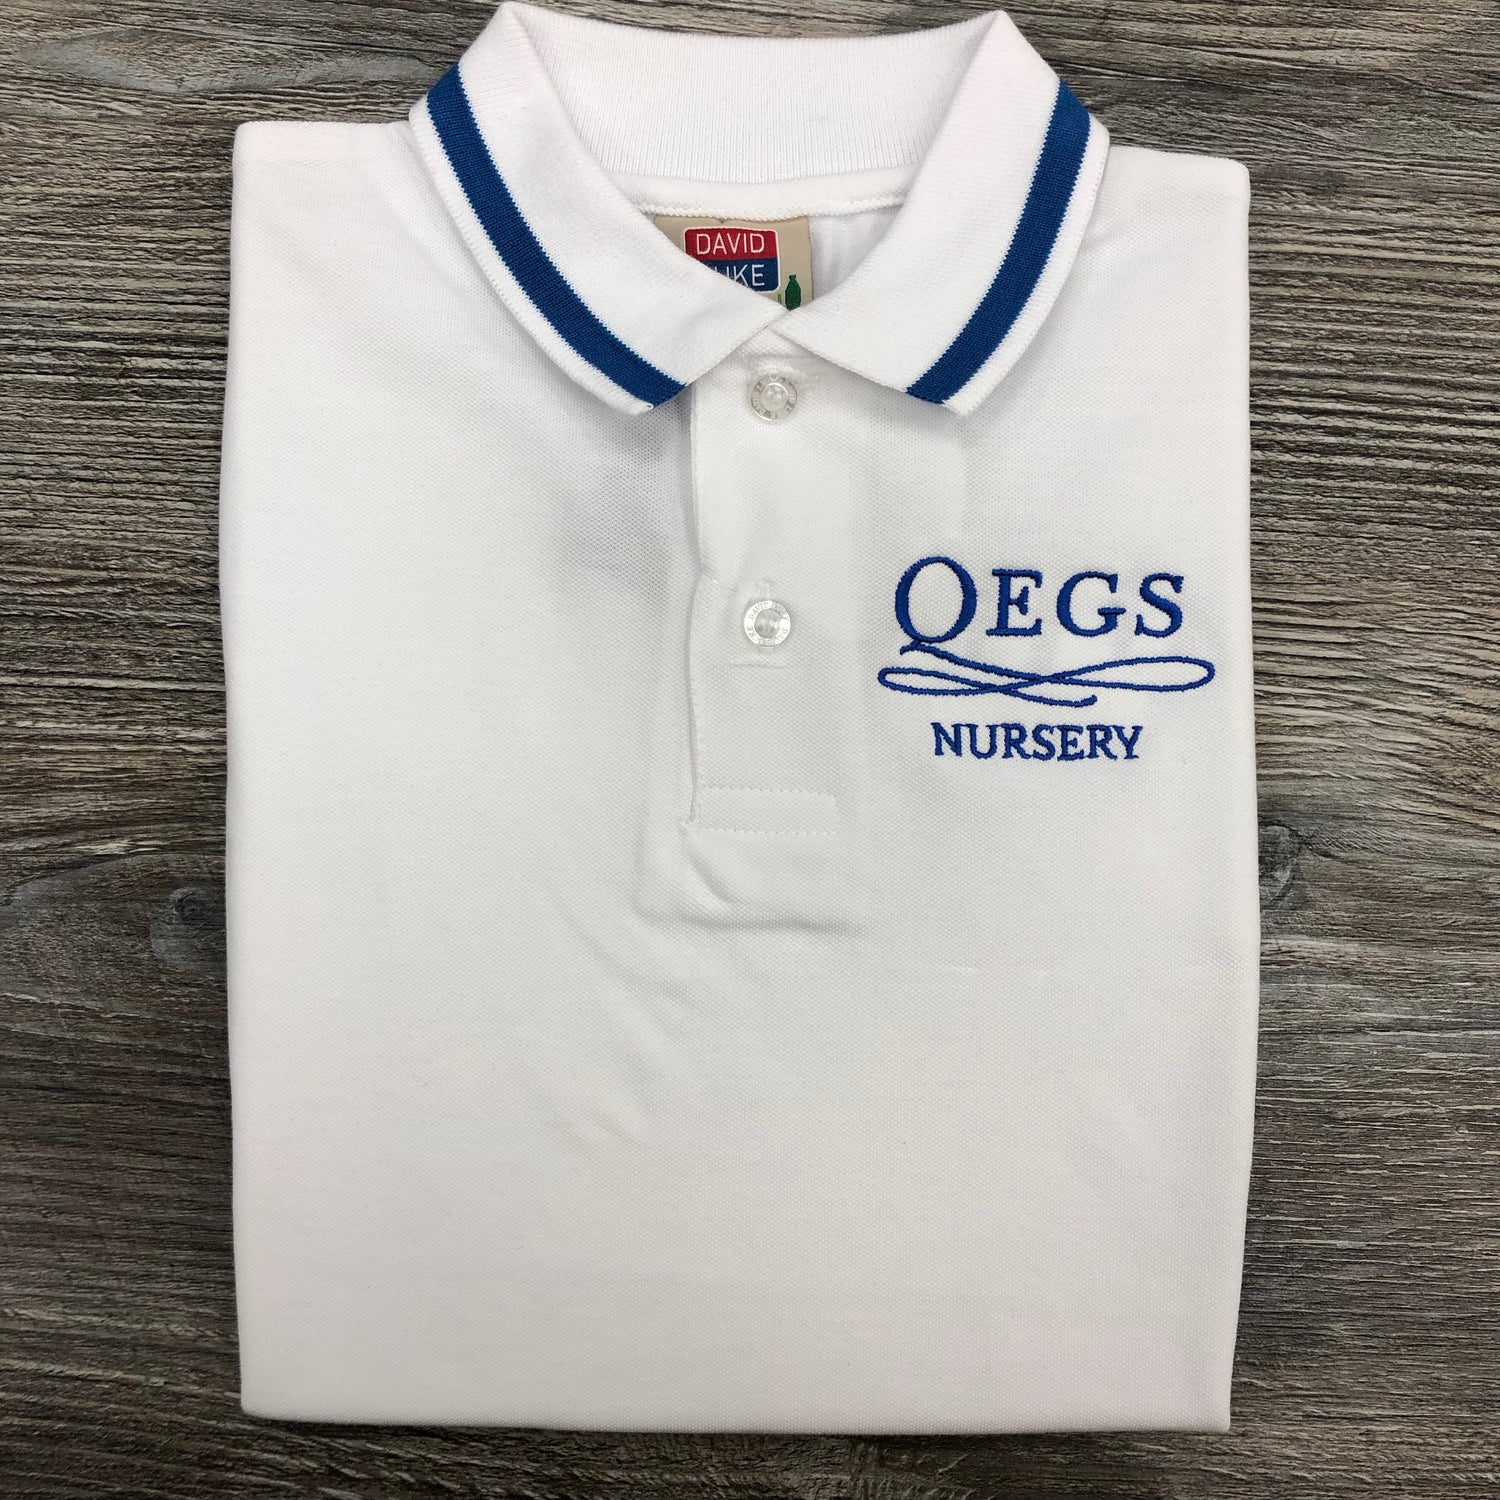 QEGS Nursery Polo